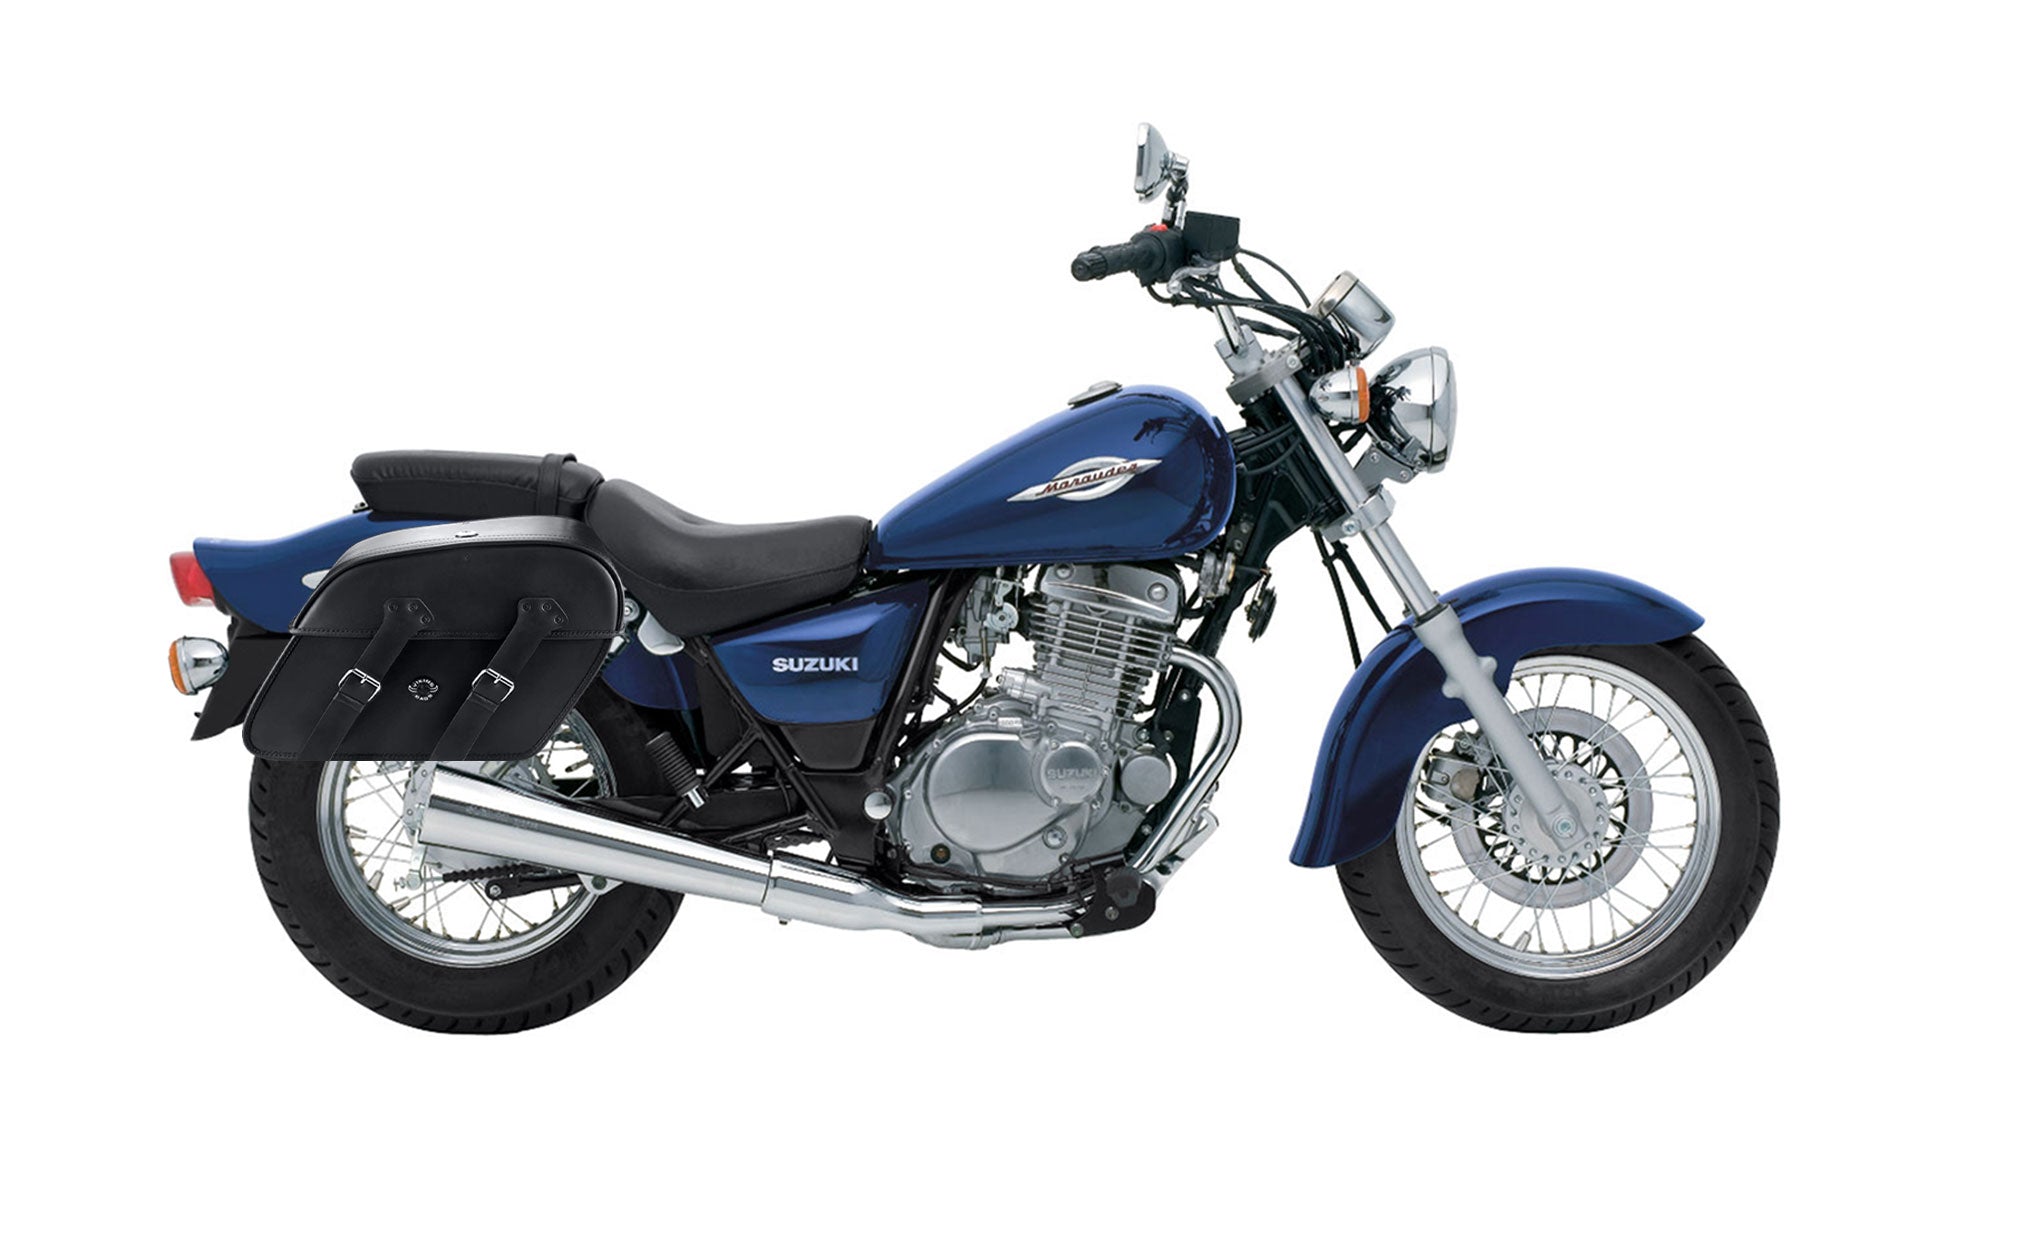 Viking Raven Extra Large Suzuki Marauder Gz250 Shock Cut Out Leather Motorcycle Saddlebags on Bike Photo @expand